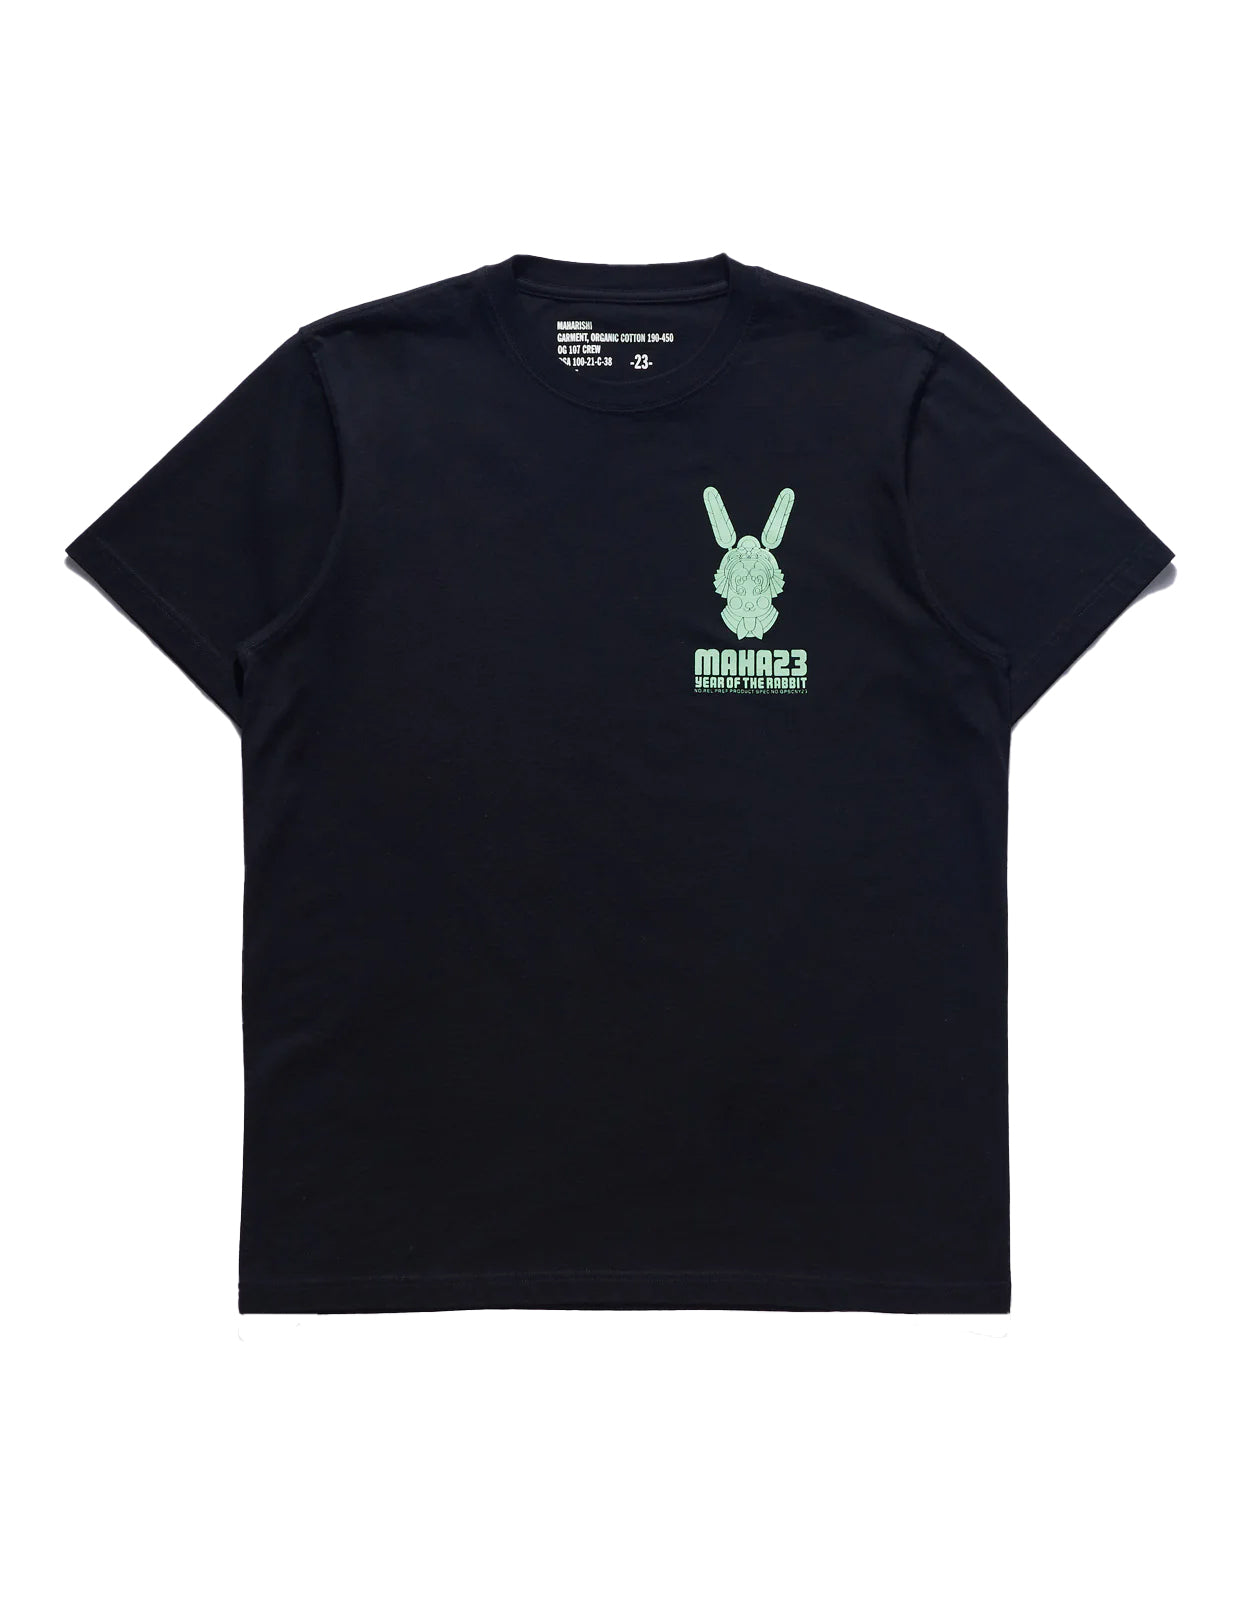 Maharishi Water Rabbit T-Shirt Black